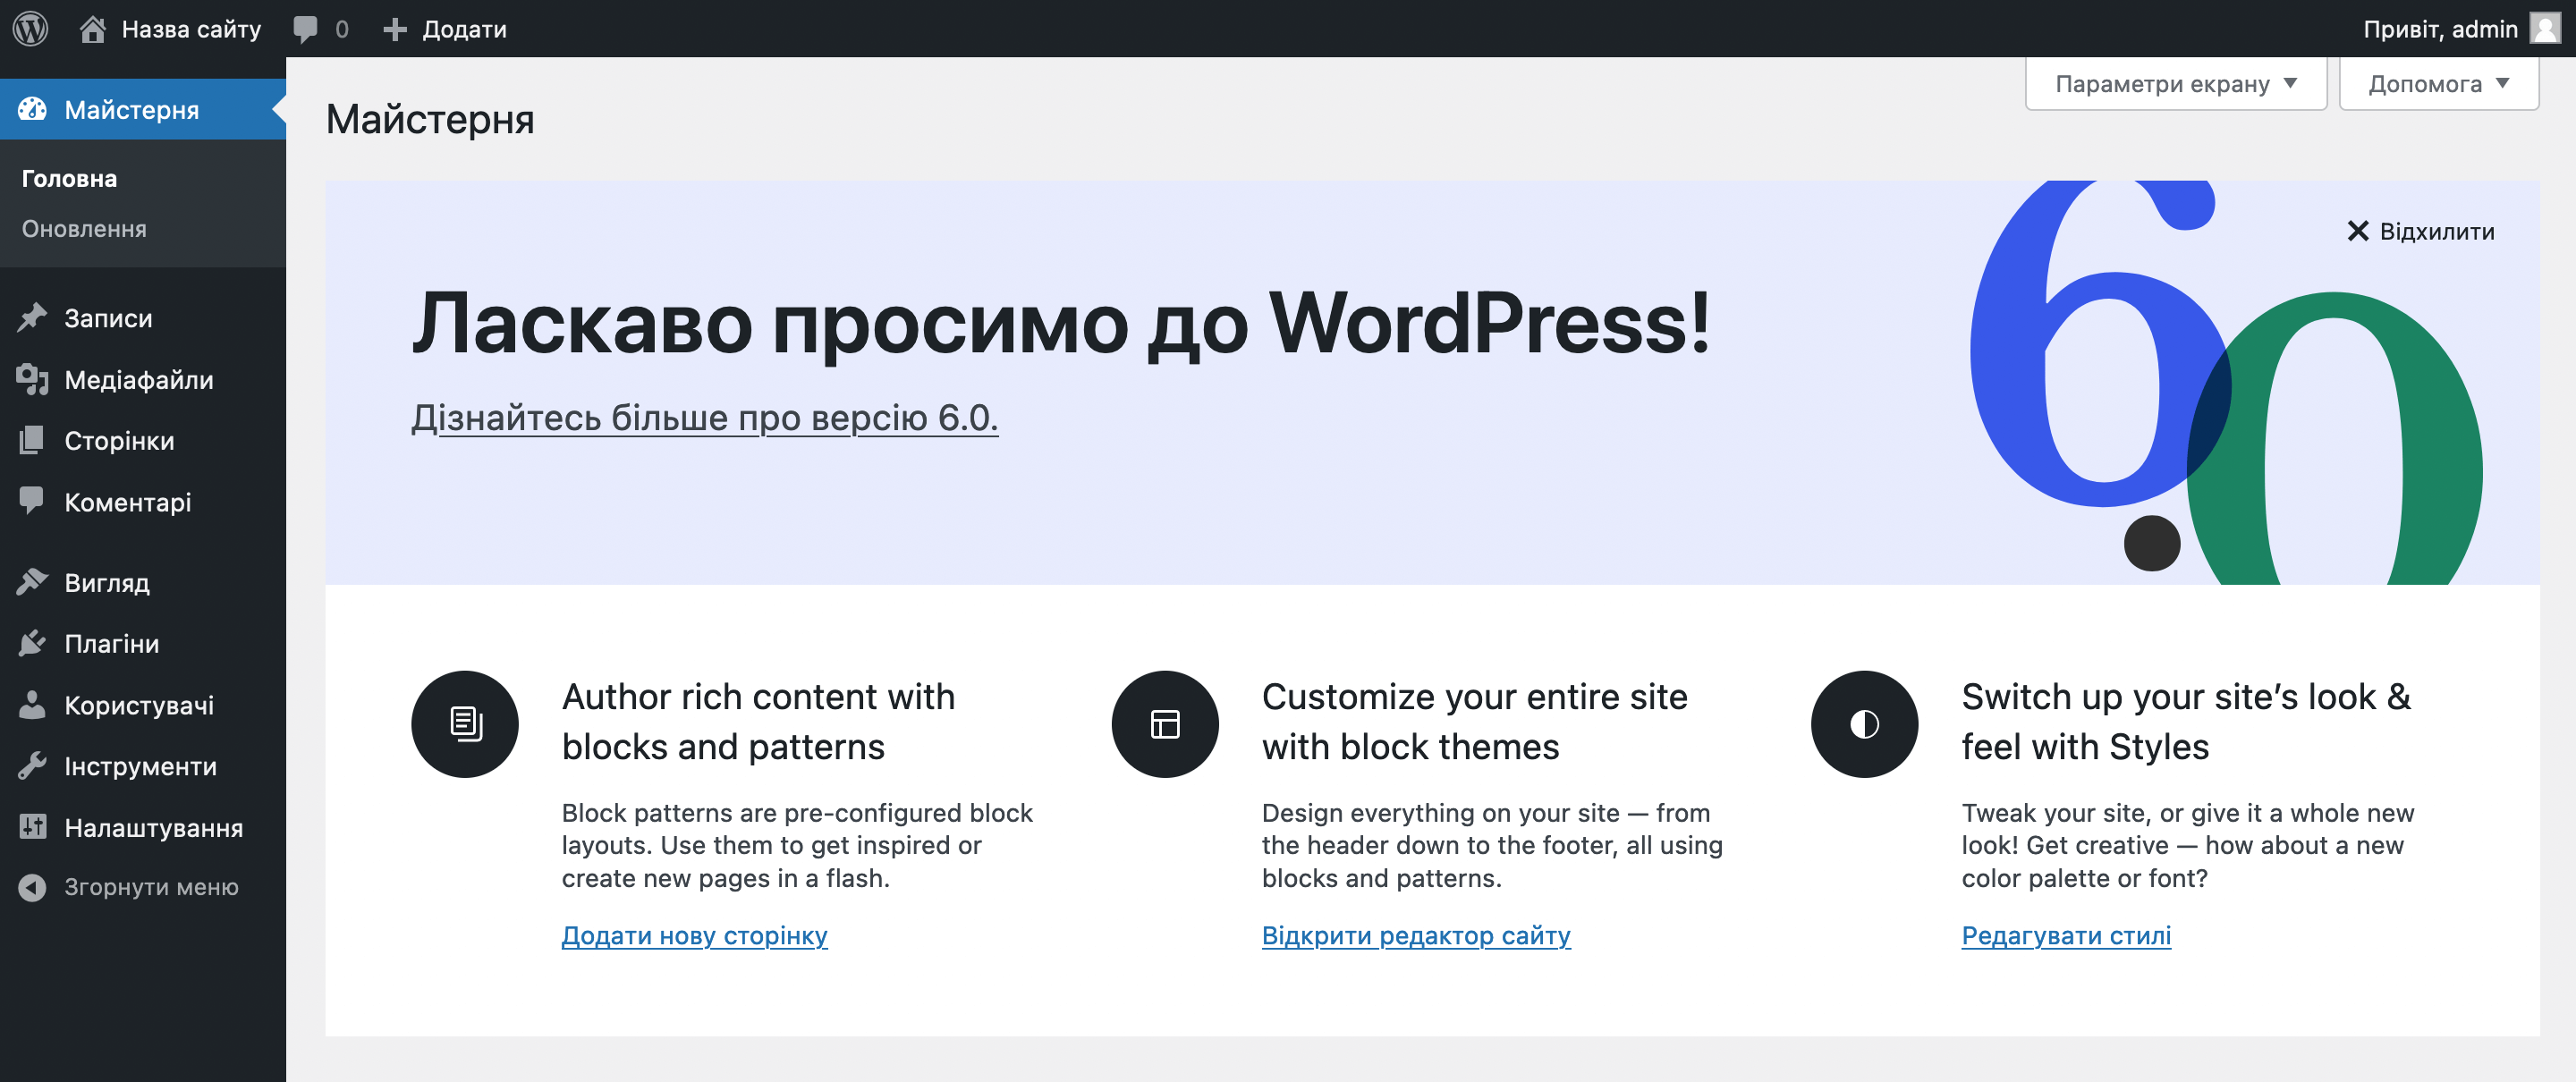 CMS: що це? Панель керування сайтом на движку WordPress.